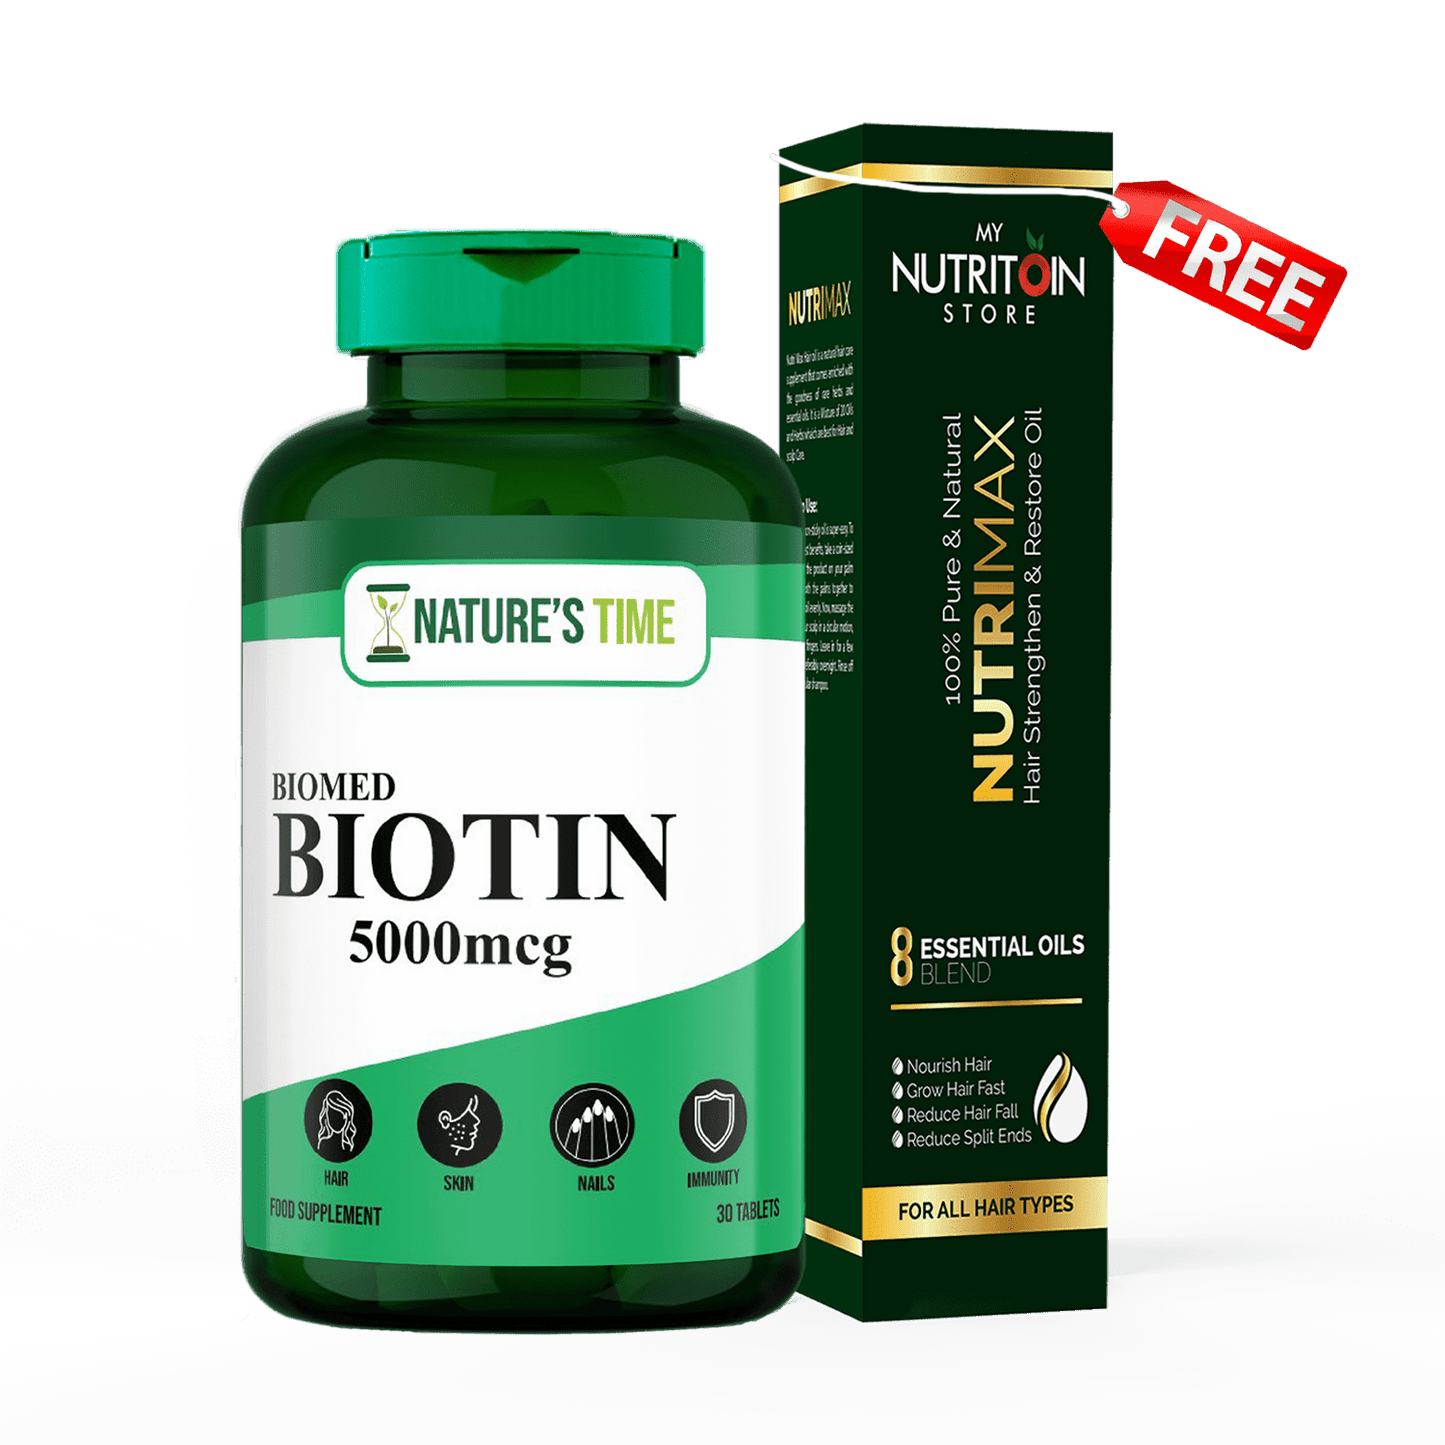 Buy Biomed- Biotin & Get Free NutriMax Oil - Healthifyme.pk